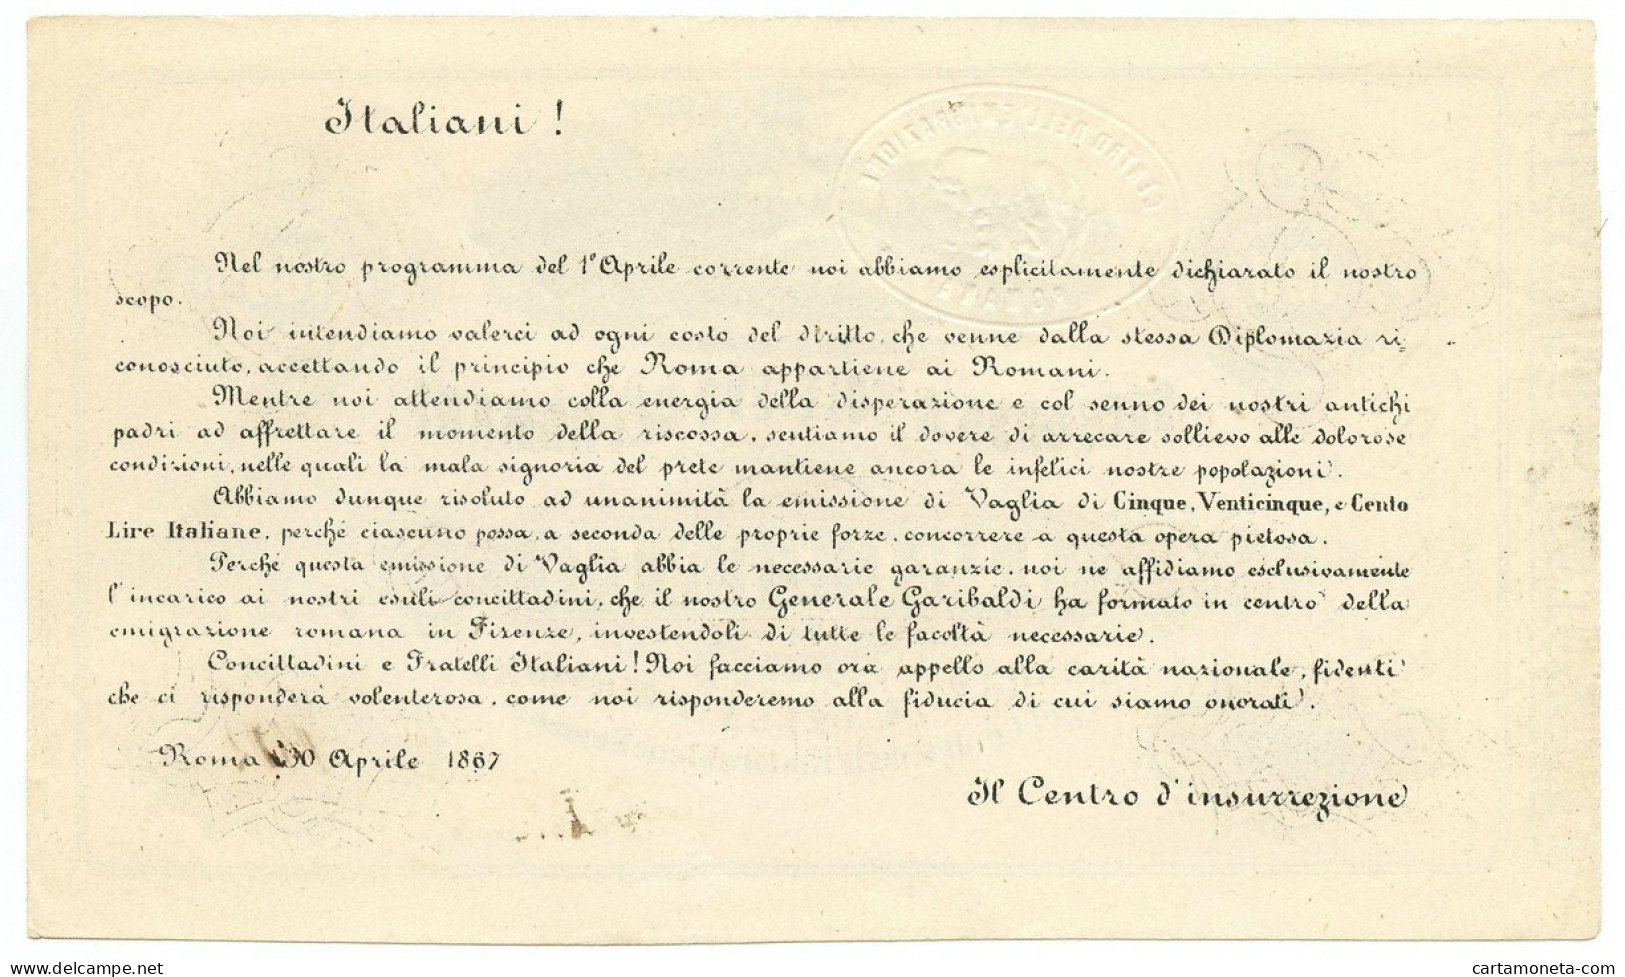 100 LIRE SOCCORSO A SOLLIEVO DEI ROMANI EMESSO FIRMA GARIBALDI 30/04/1867 SUP- - Autres & Non Classés